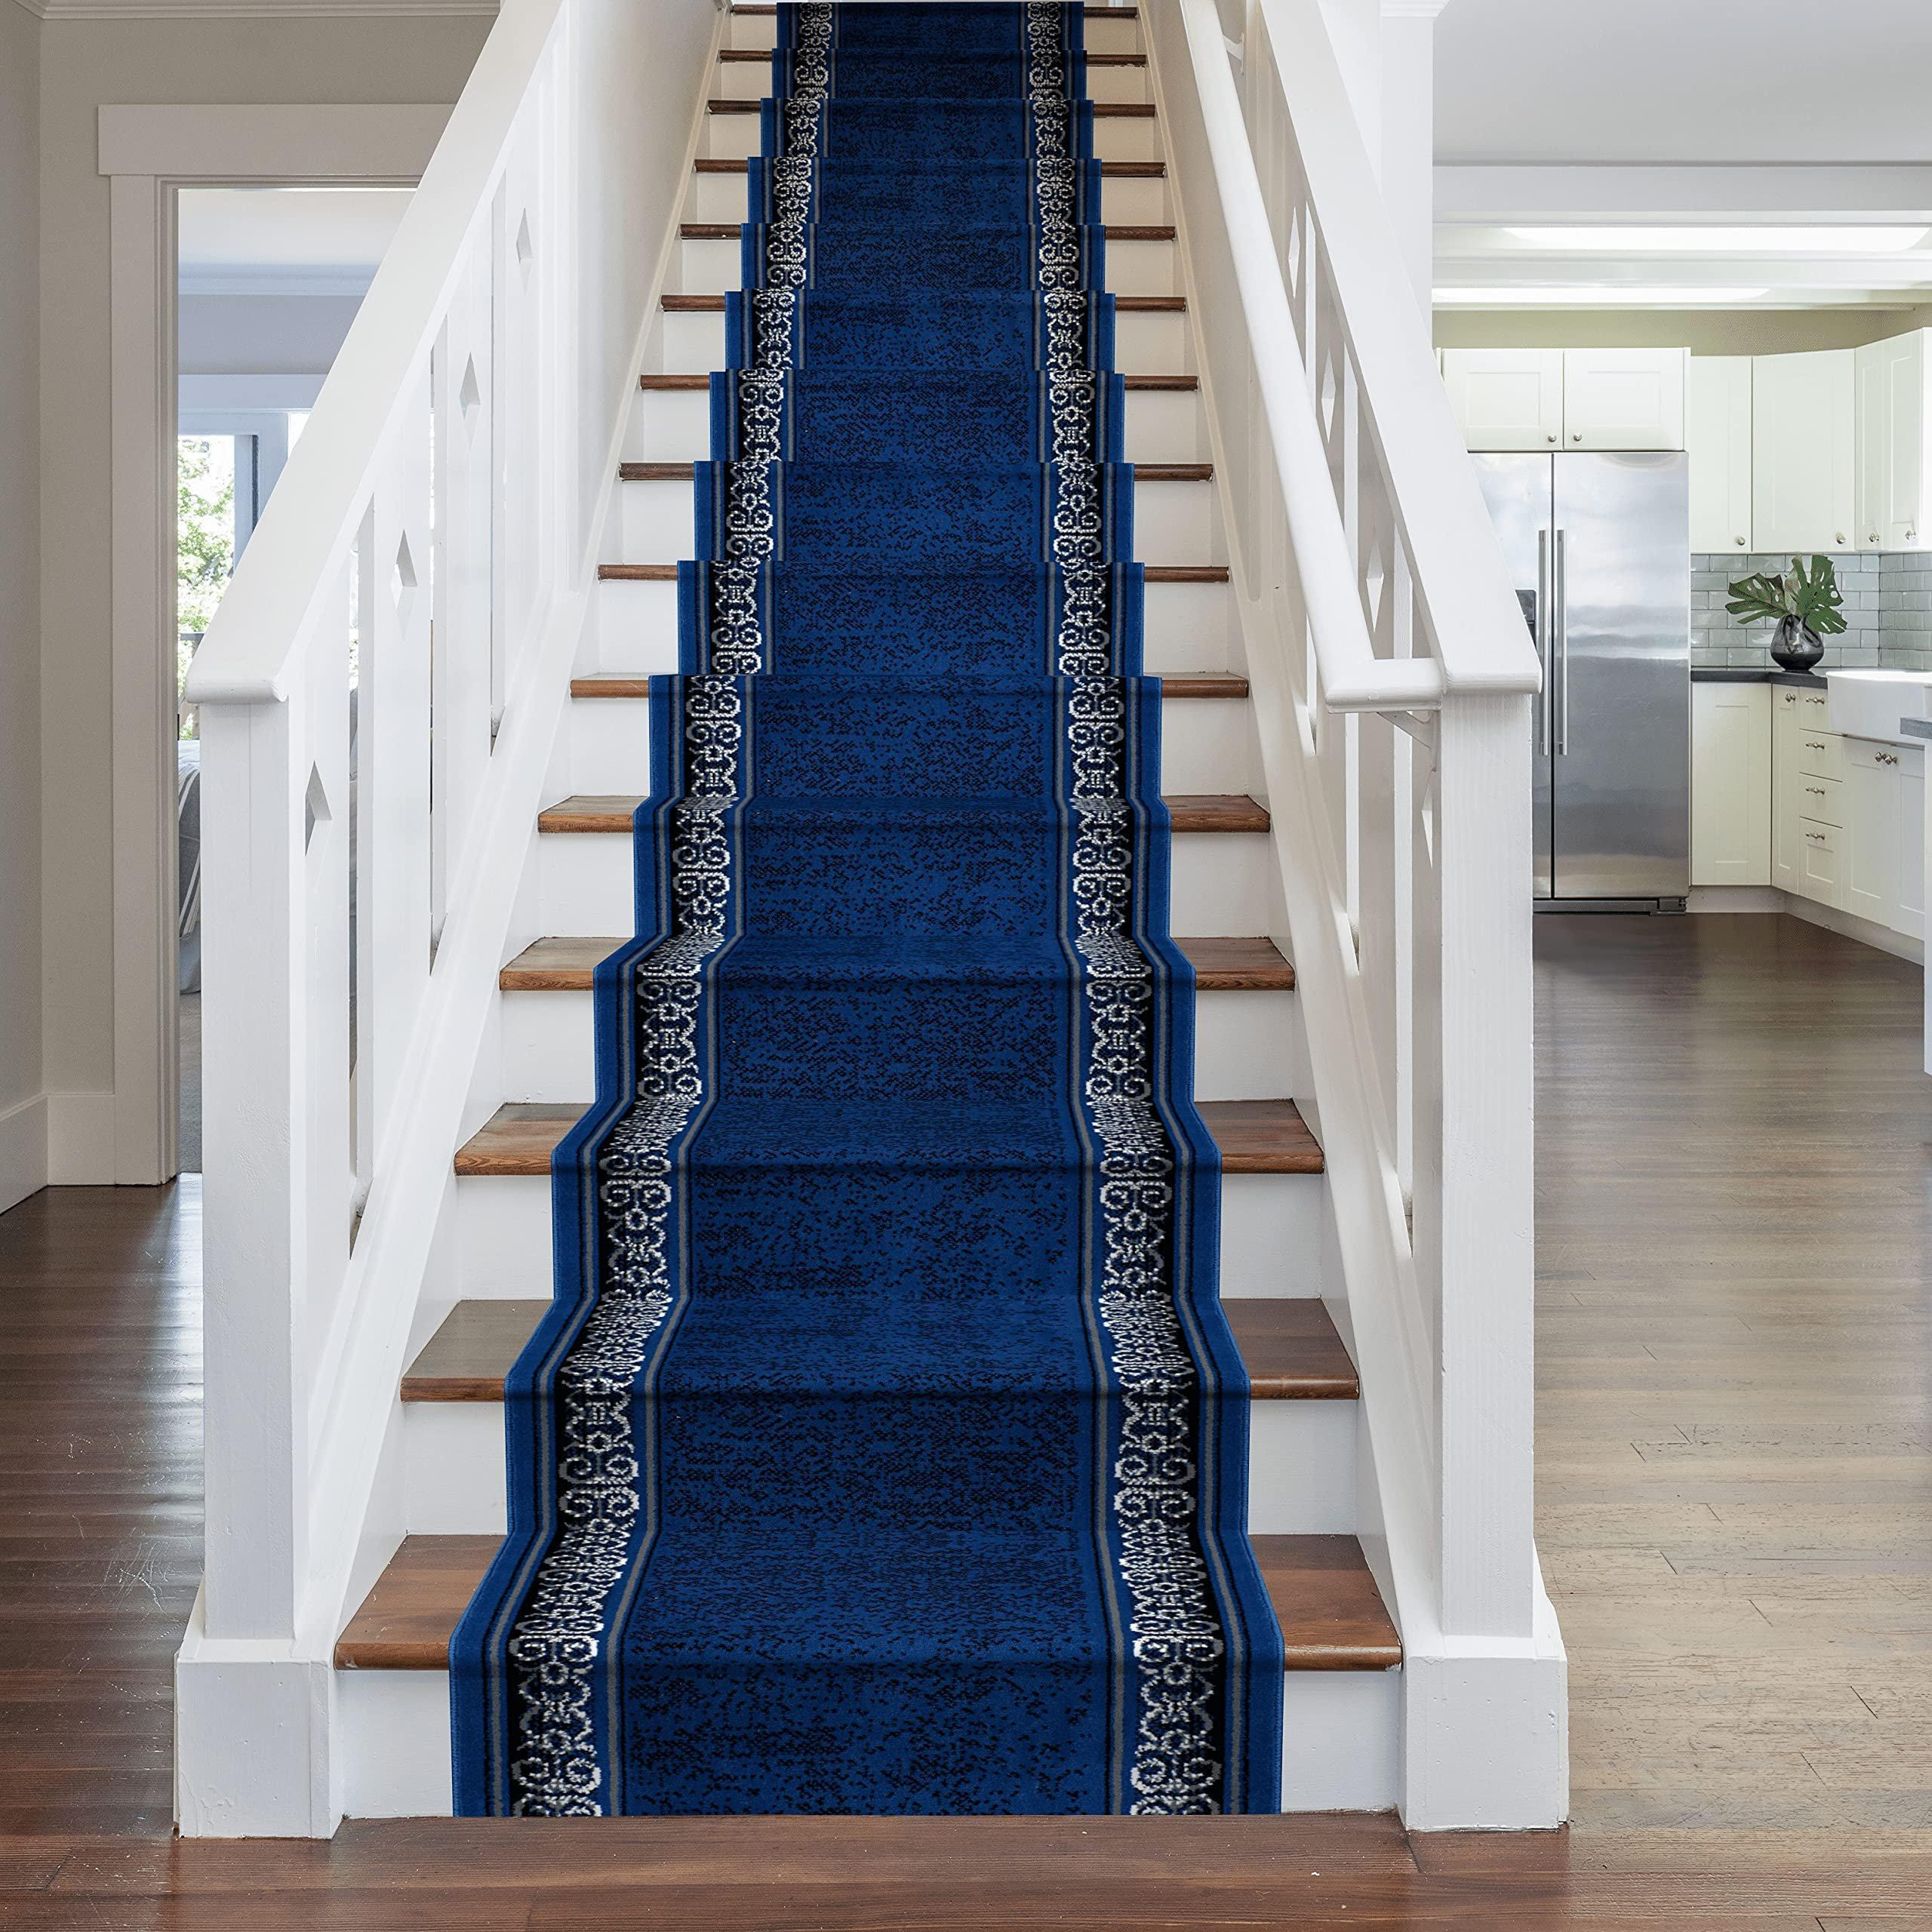 Blue Tribal Stair Carpet Runner - image 1